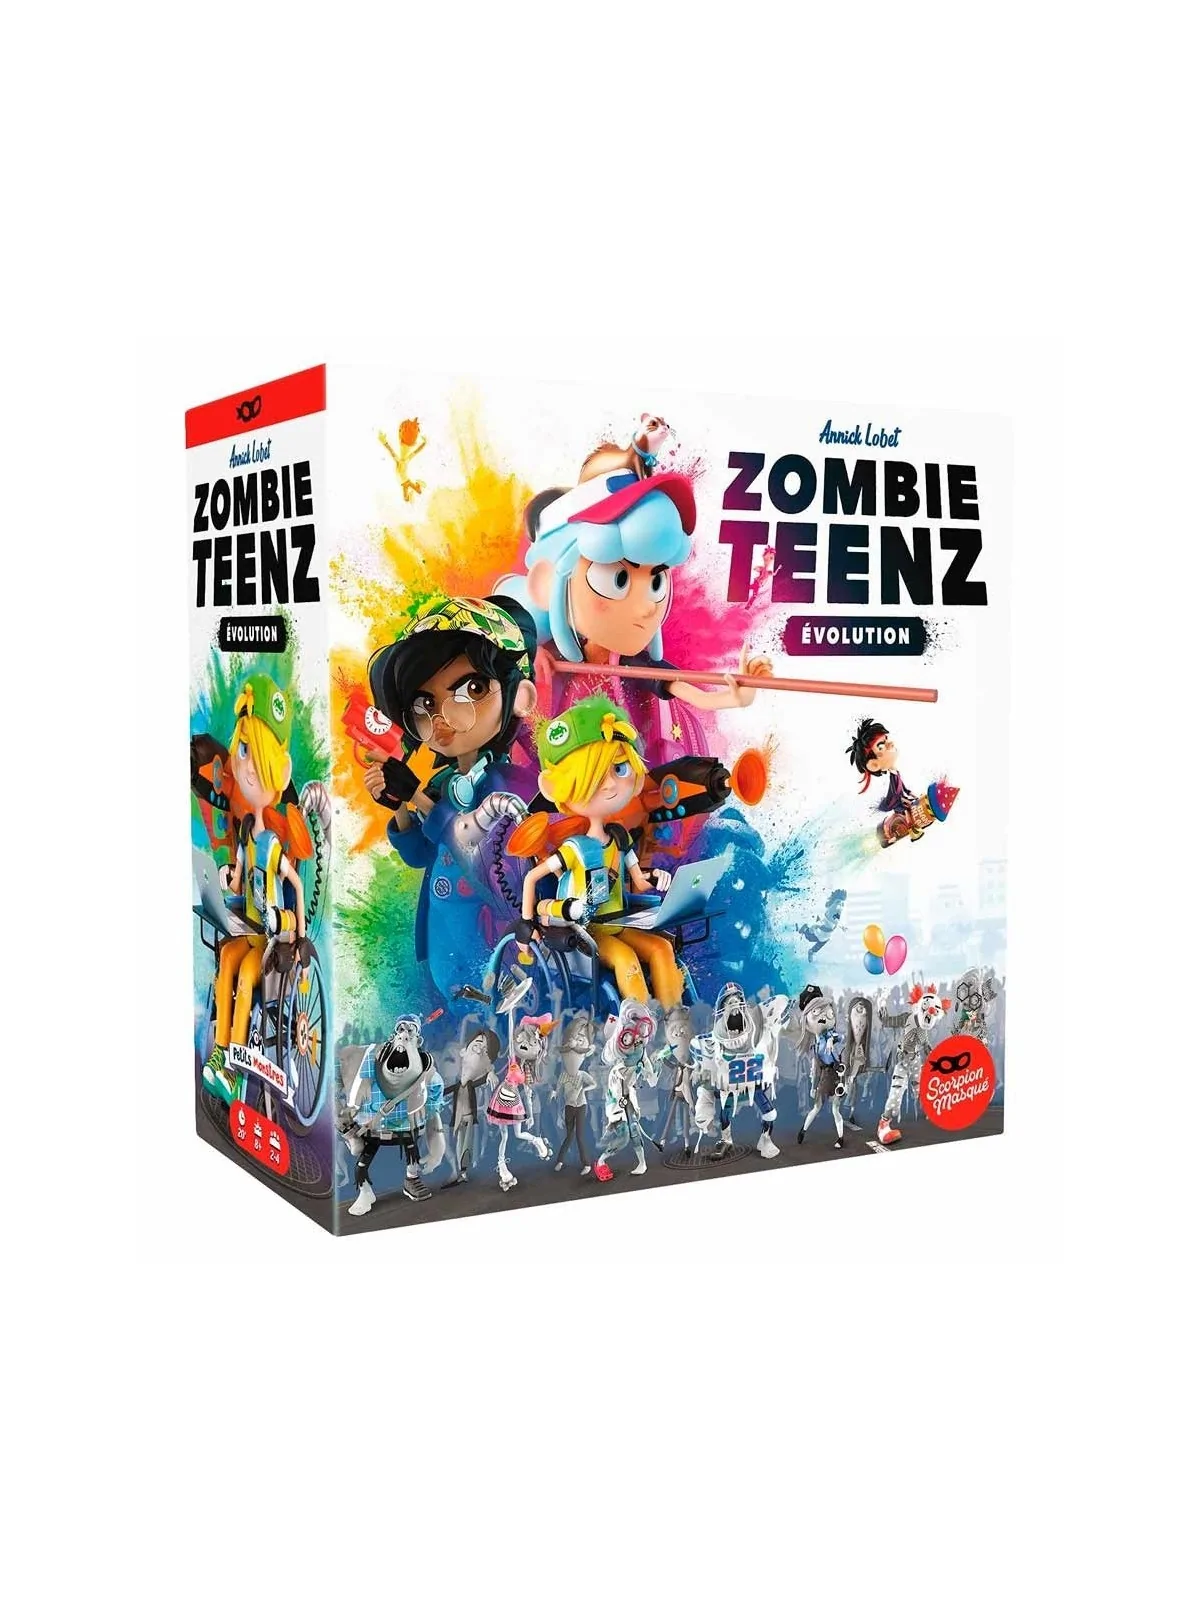 Comprar Zombie Teenz Evolution barato al mejor precio 22,49 € de Asmod